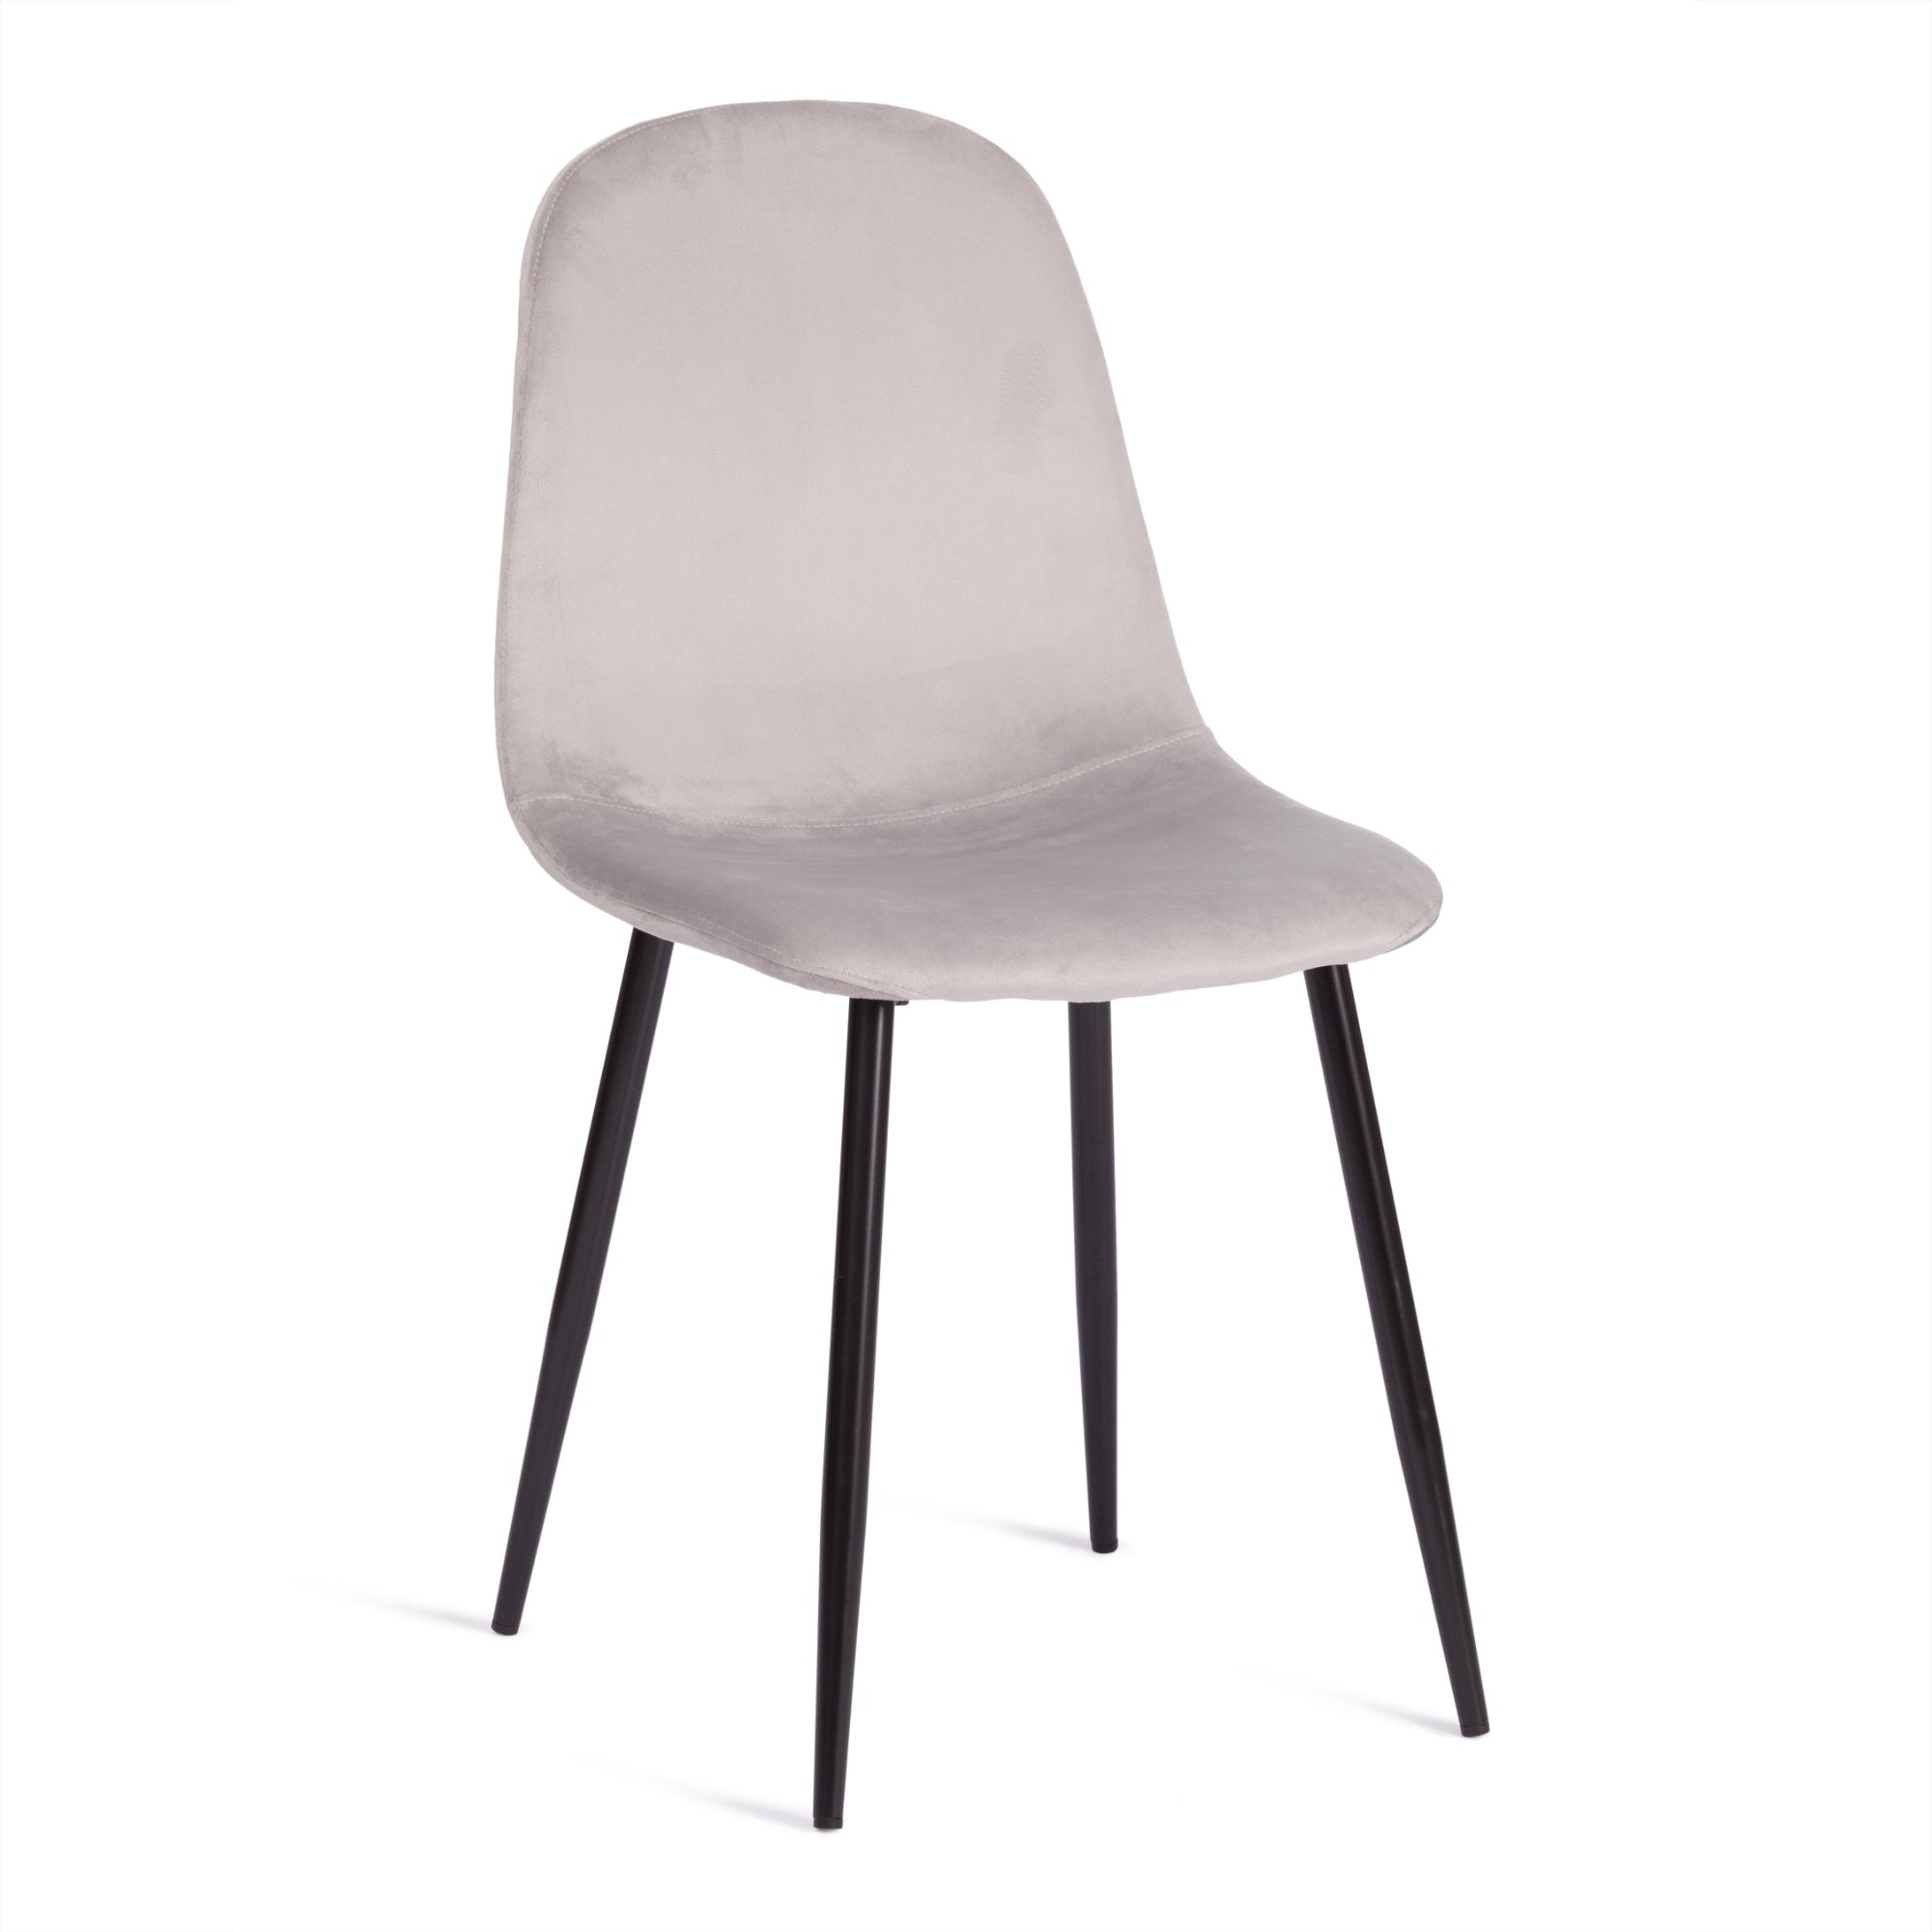 Стул TC серый с черным вельвет, металл 44х53х87 см стул стул венера кремовый вельвет